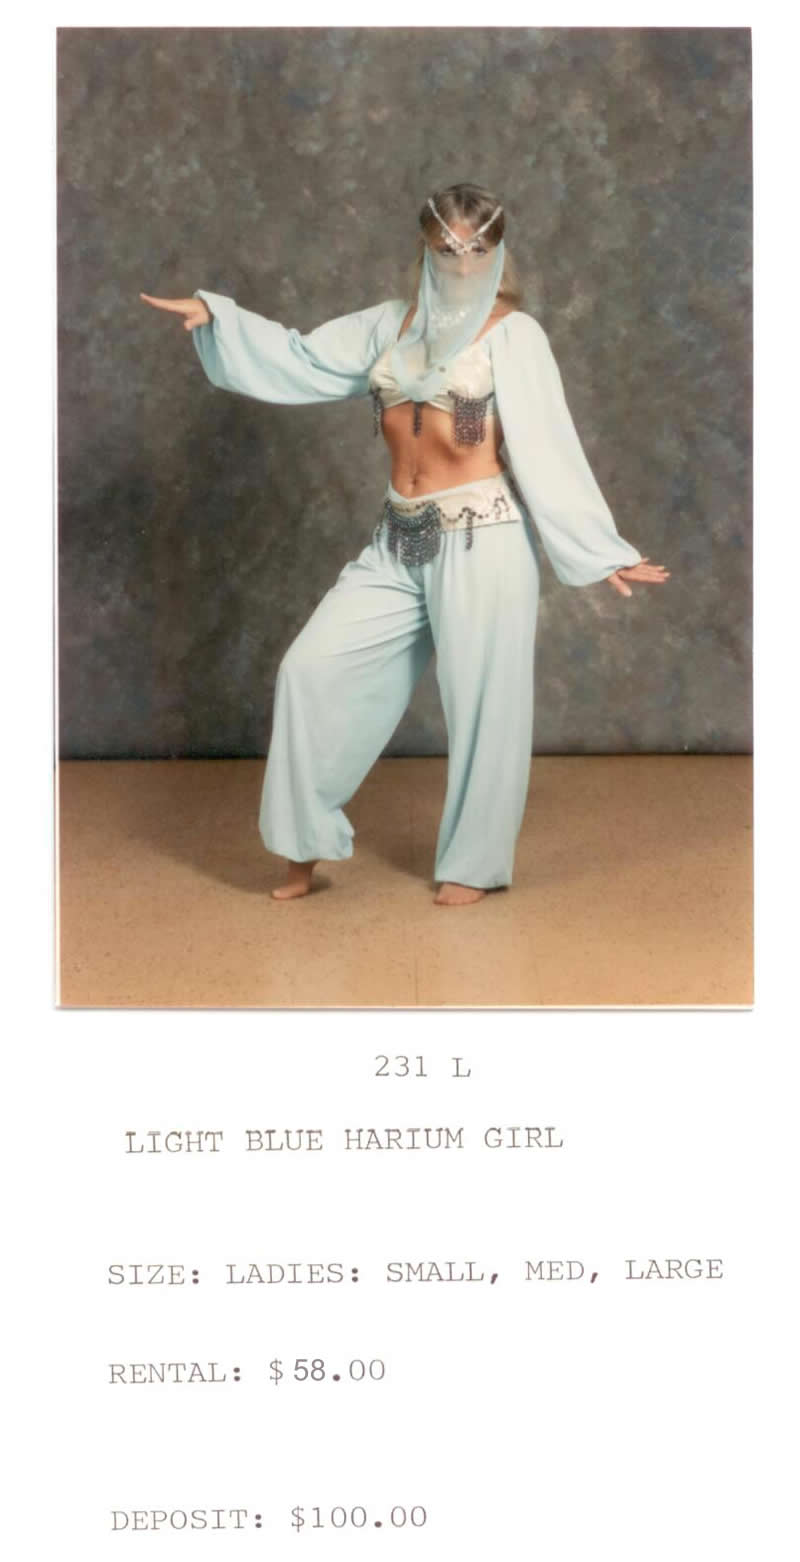 HARIUM GIRL - LT BLUE